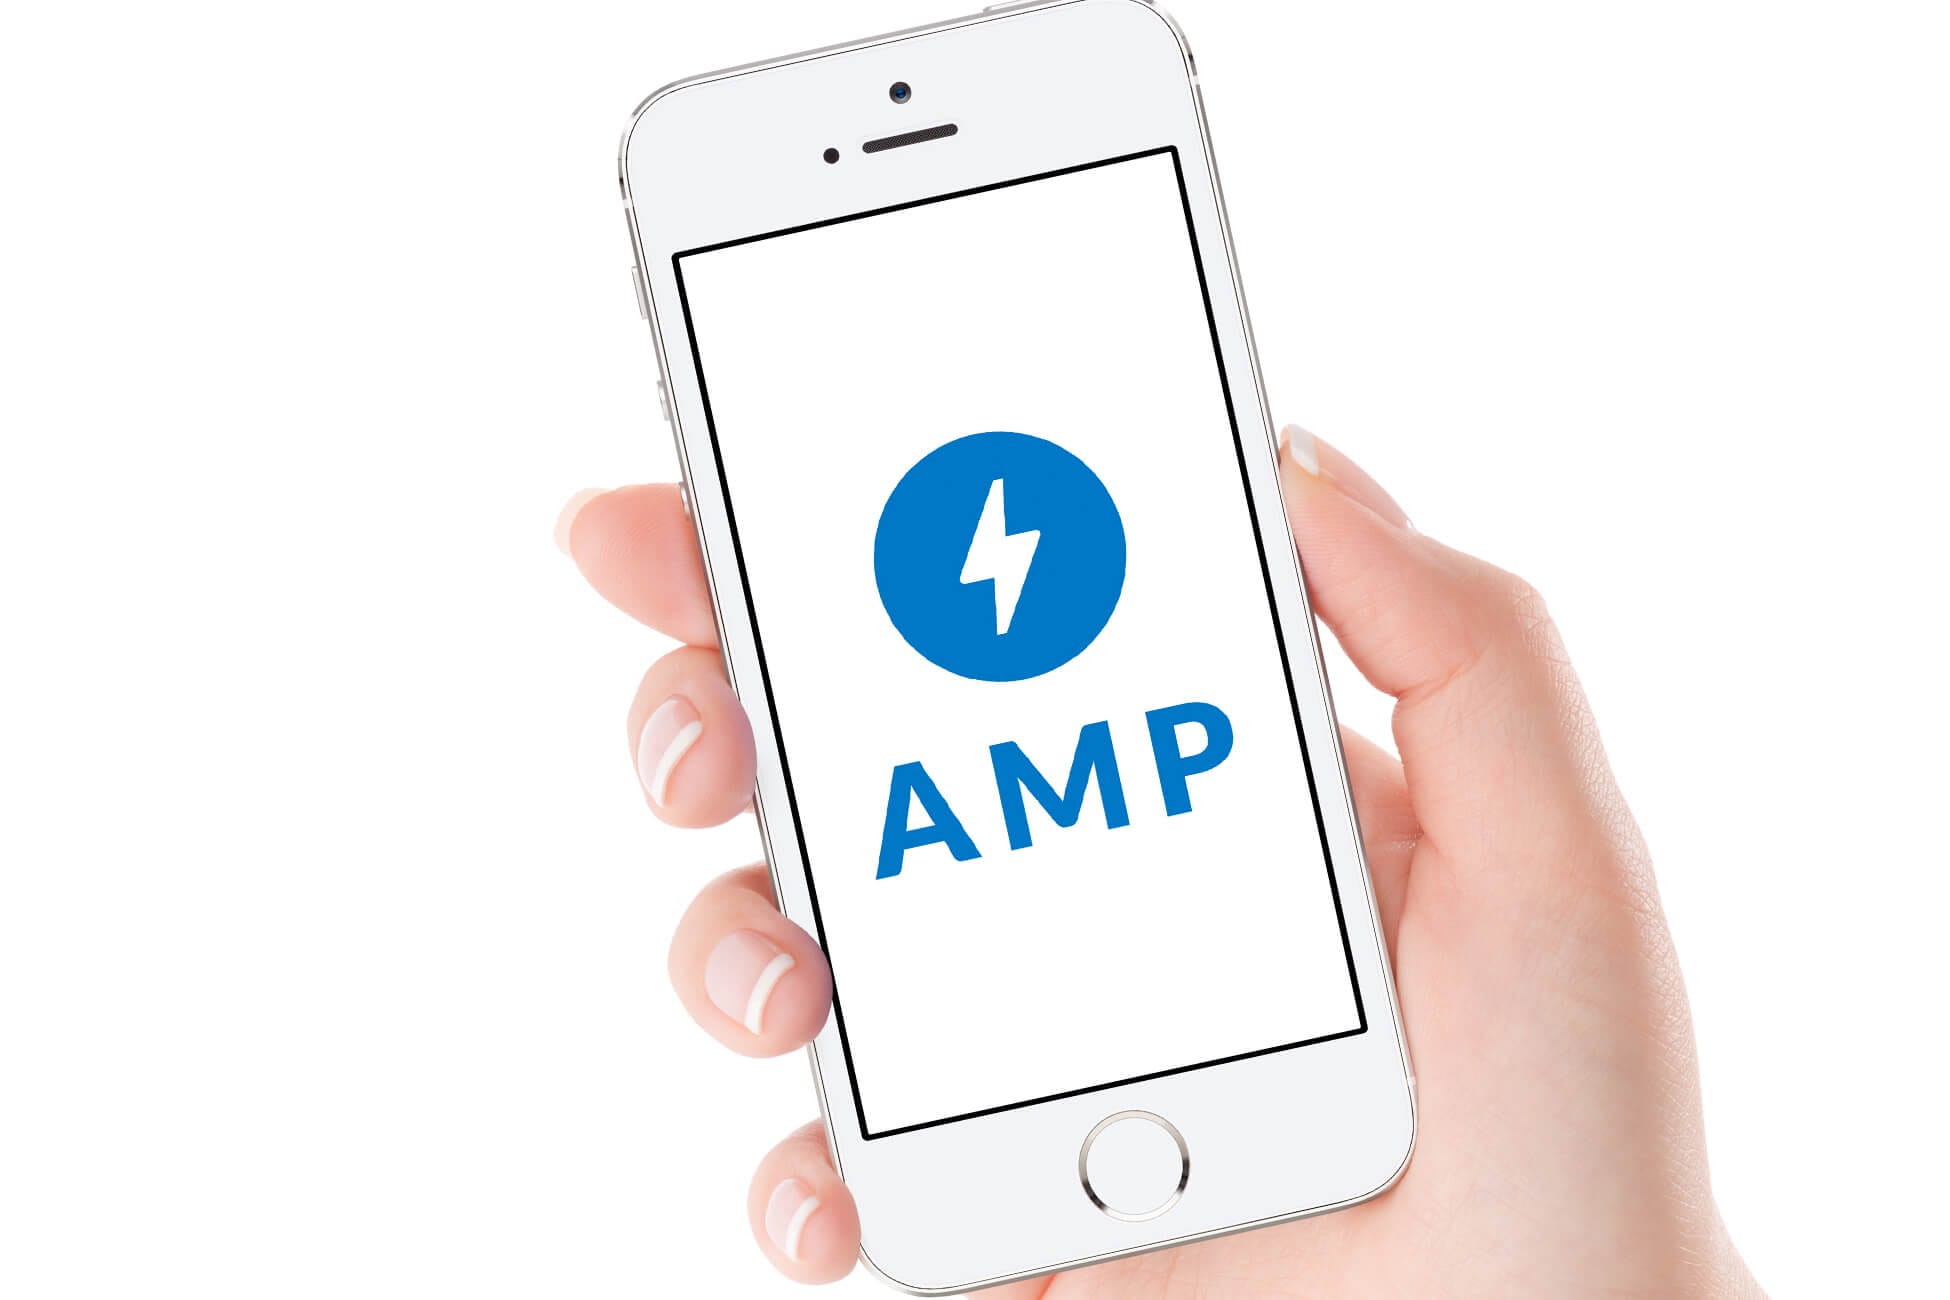 AMP - Accelerated Mobile Pages là một dự án được thiết lập bởi Google nhằm mang đến trải nghiệm người dùng tối dùng tối ưu trên thiết bị di dộng